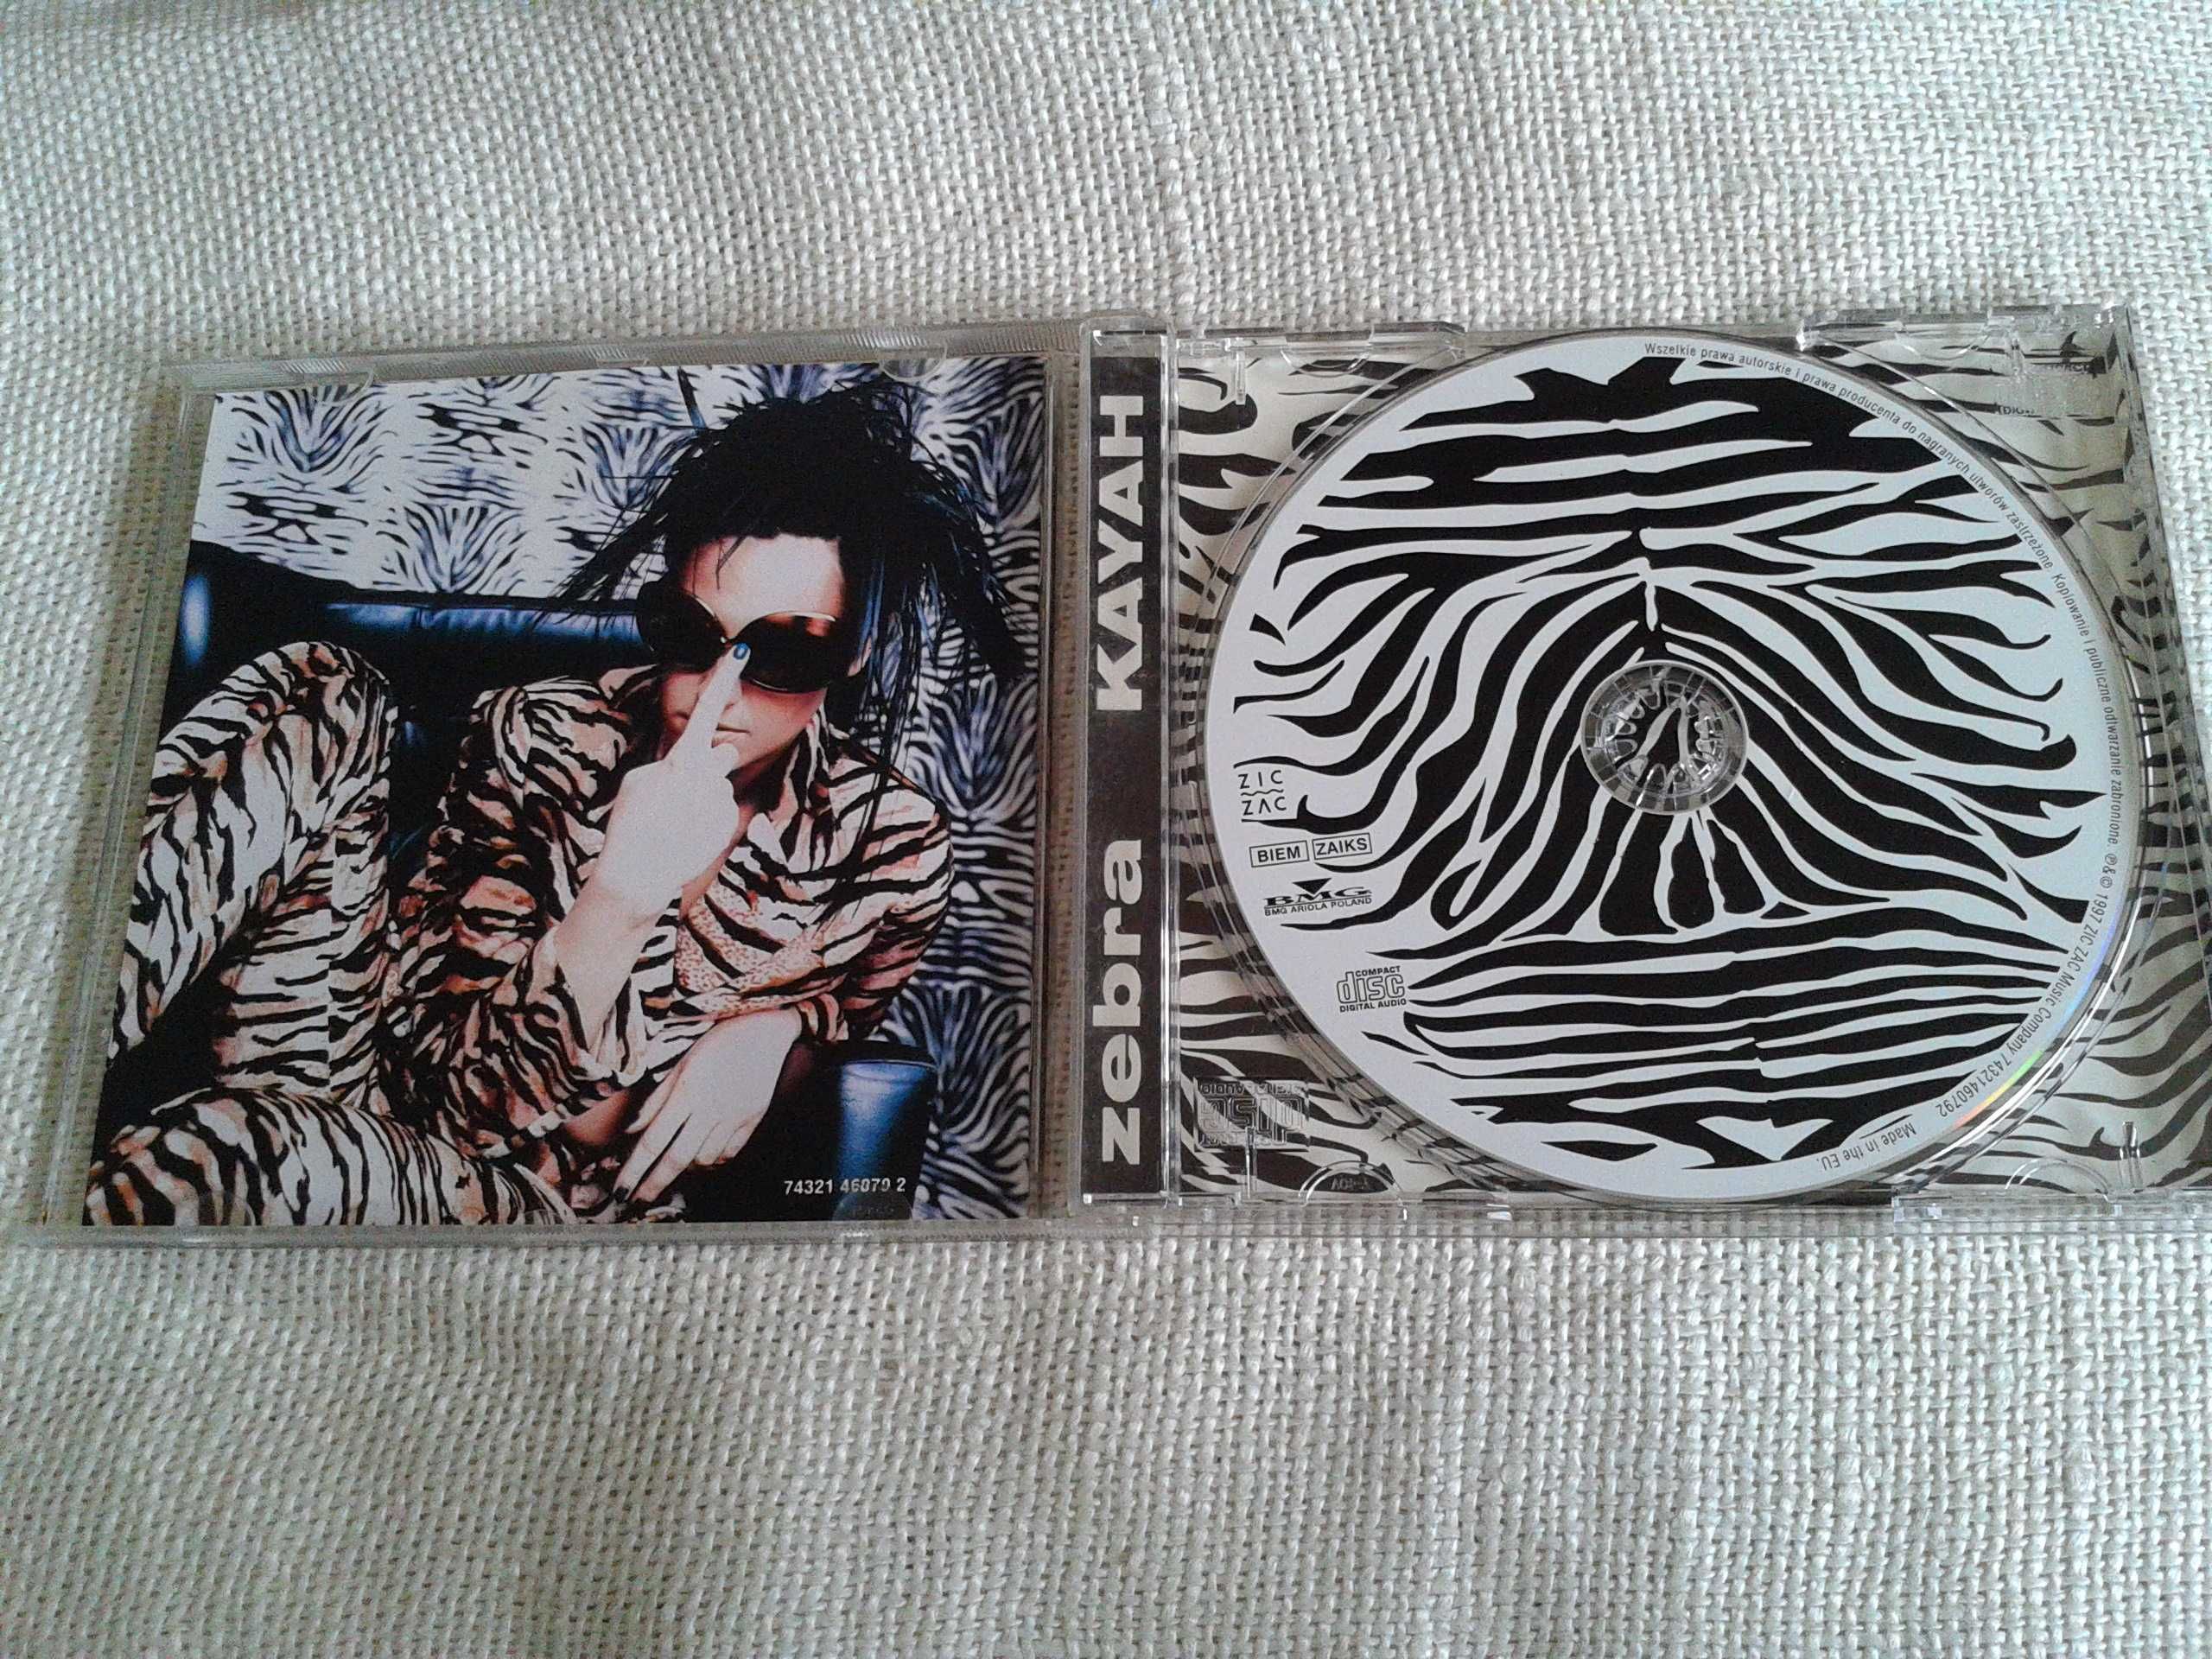 Kayah - Zebra  CD